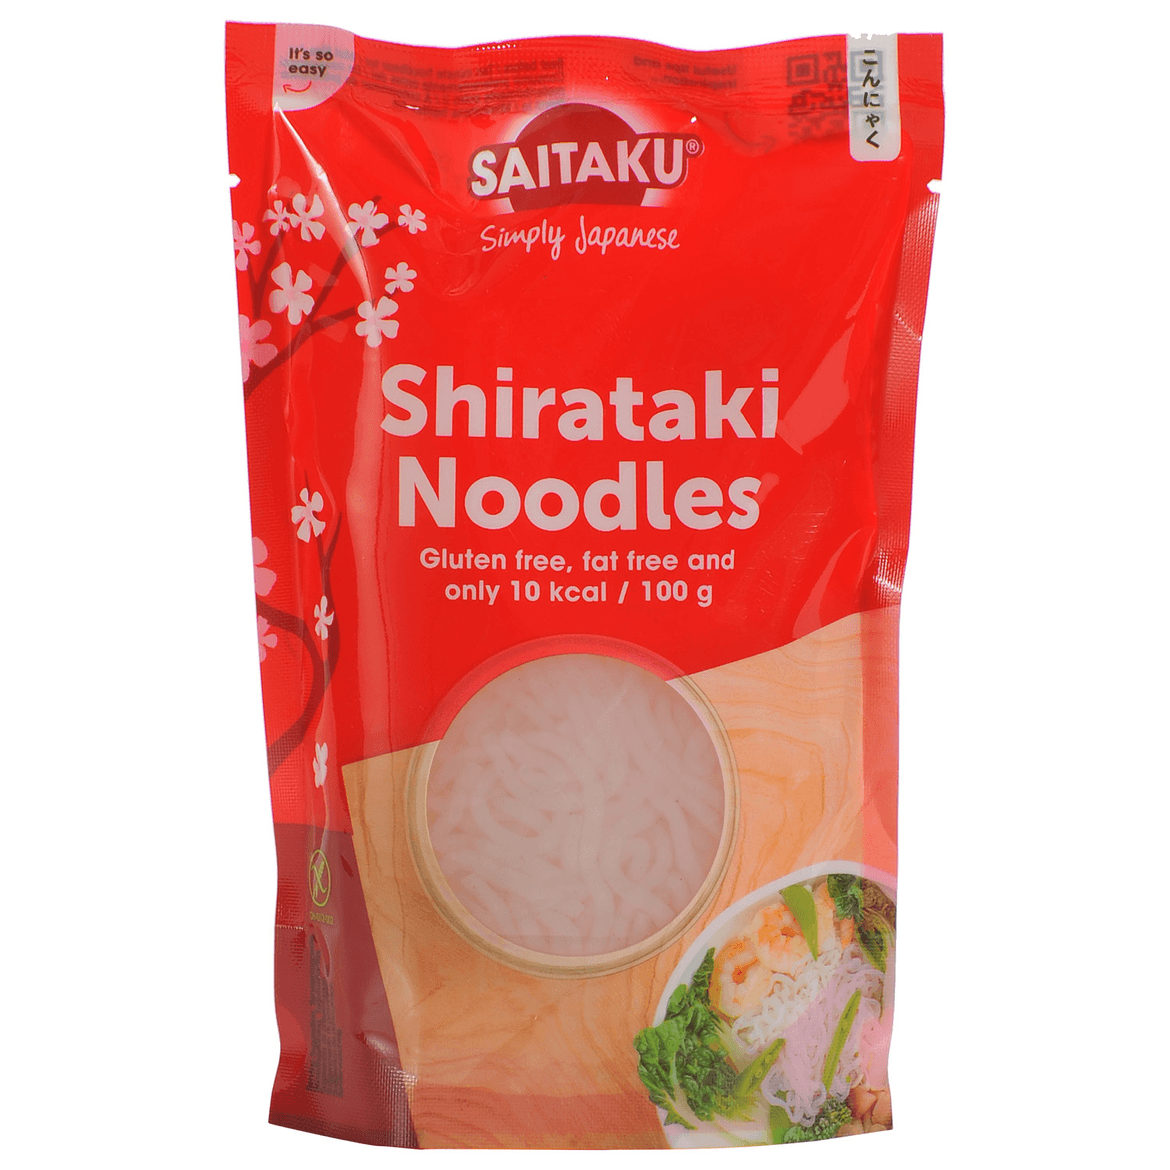 Shirataki tészta